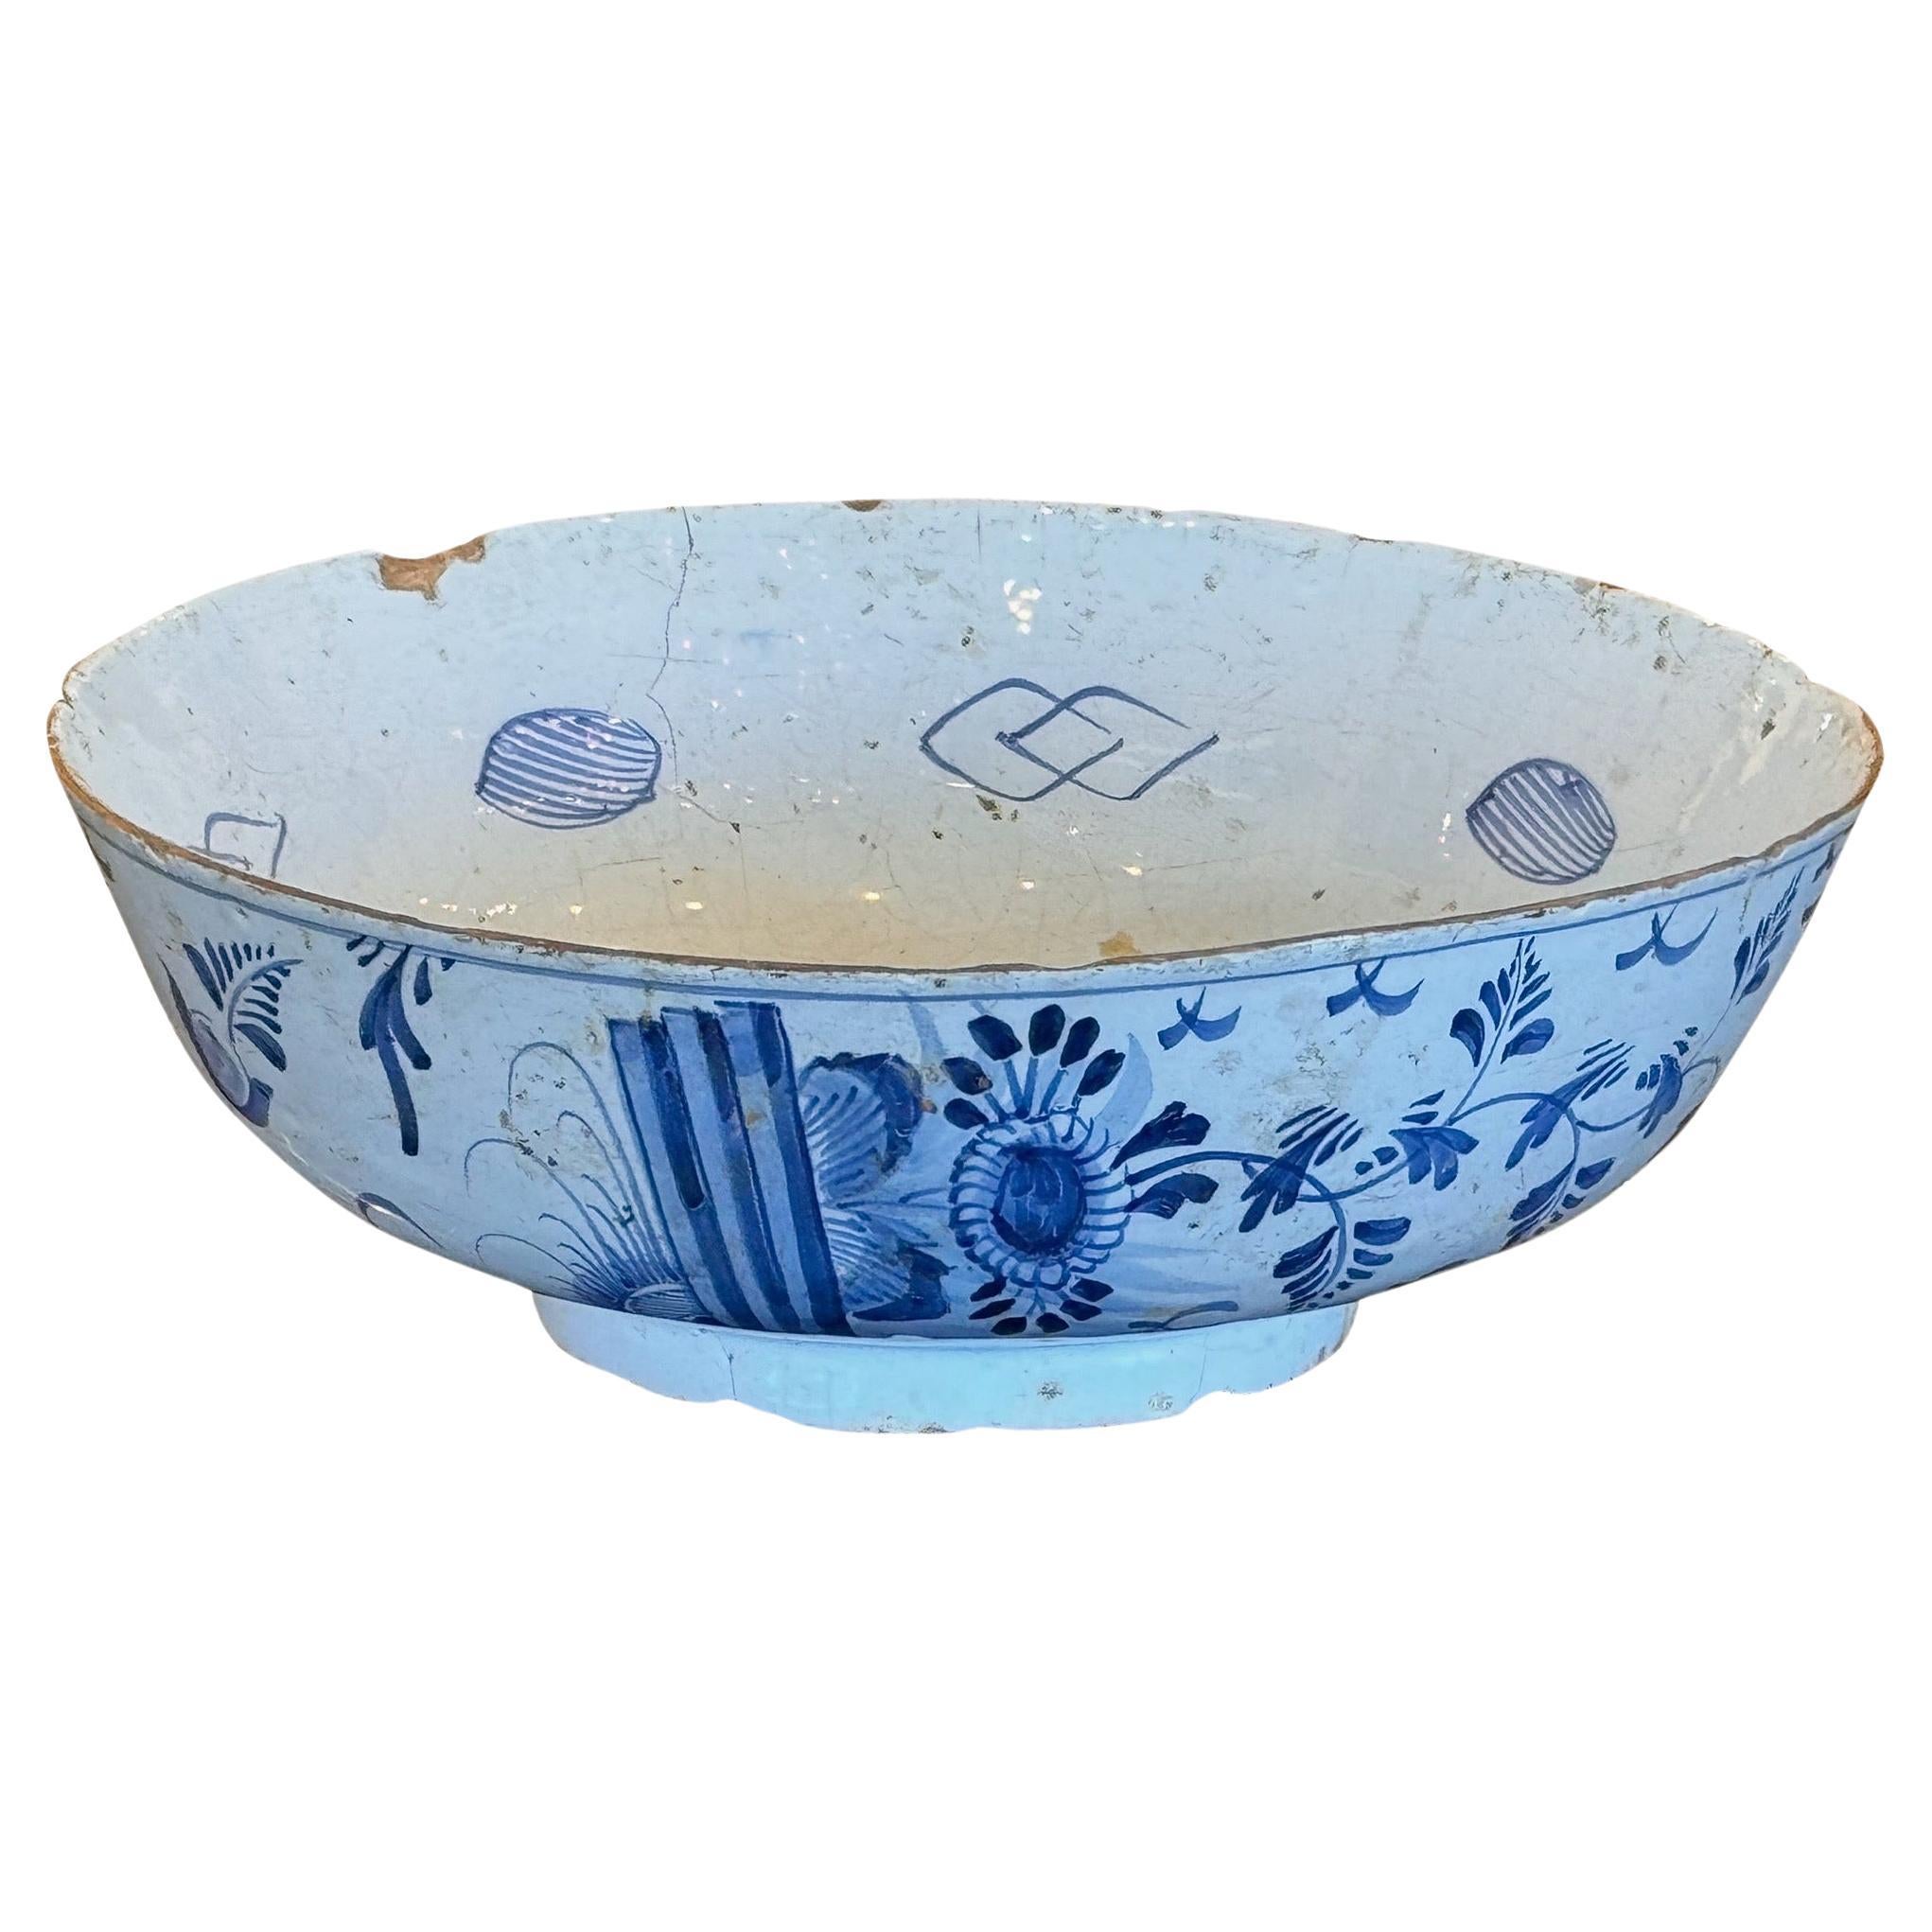 18th Century Delft Bowl